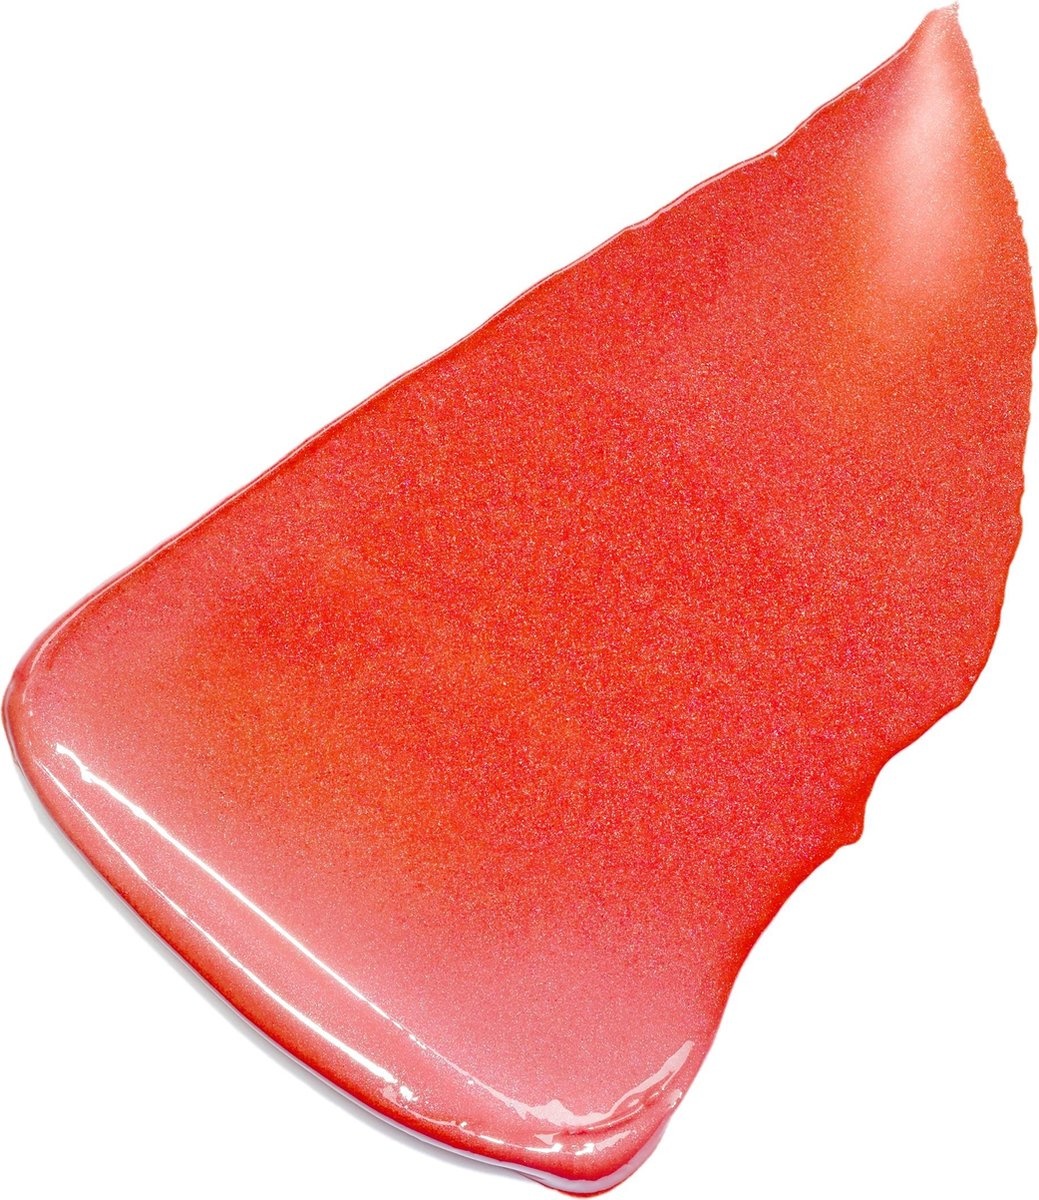 L’Oréal Paris Color Riche Lippenstift - 373 Magnetic Coral